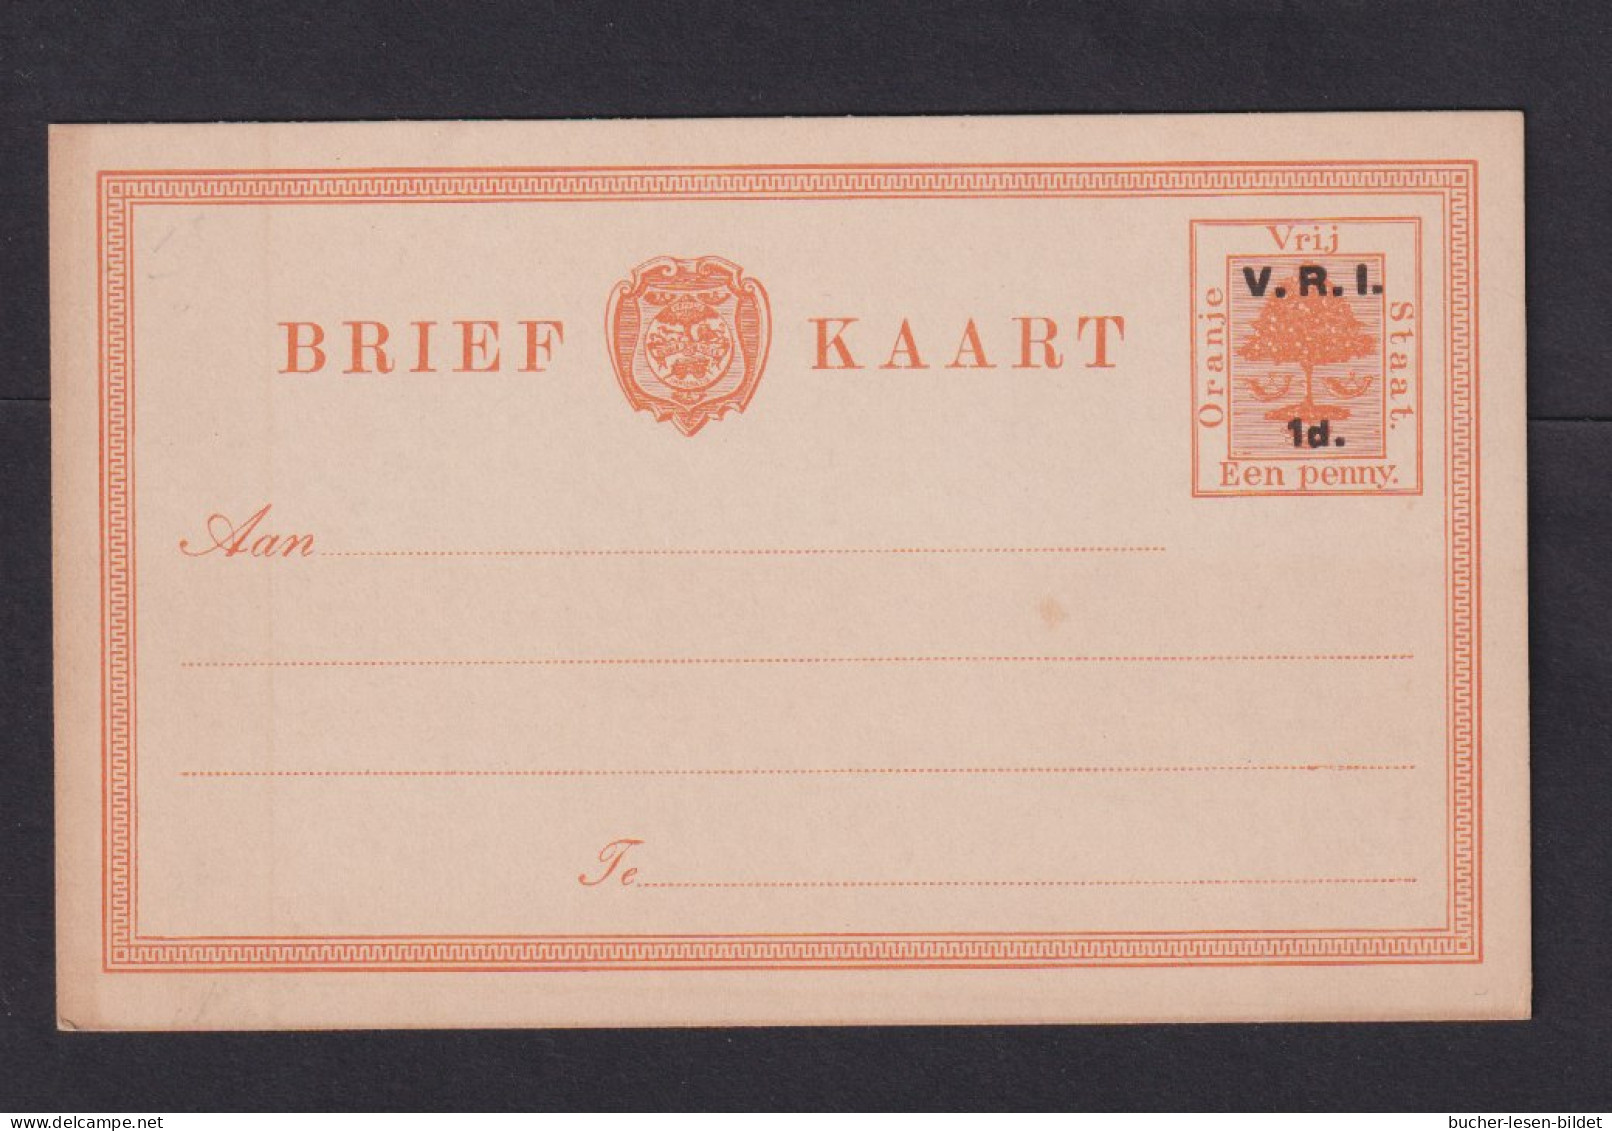 1 P. (klein) Überdruck-Ganzsache (P 5) - Ungebraucht - État Libre D'Orange (1868-1909)